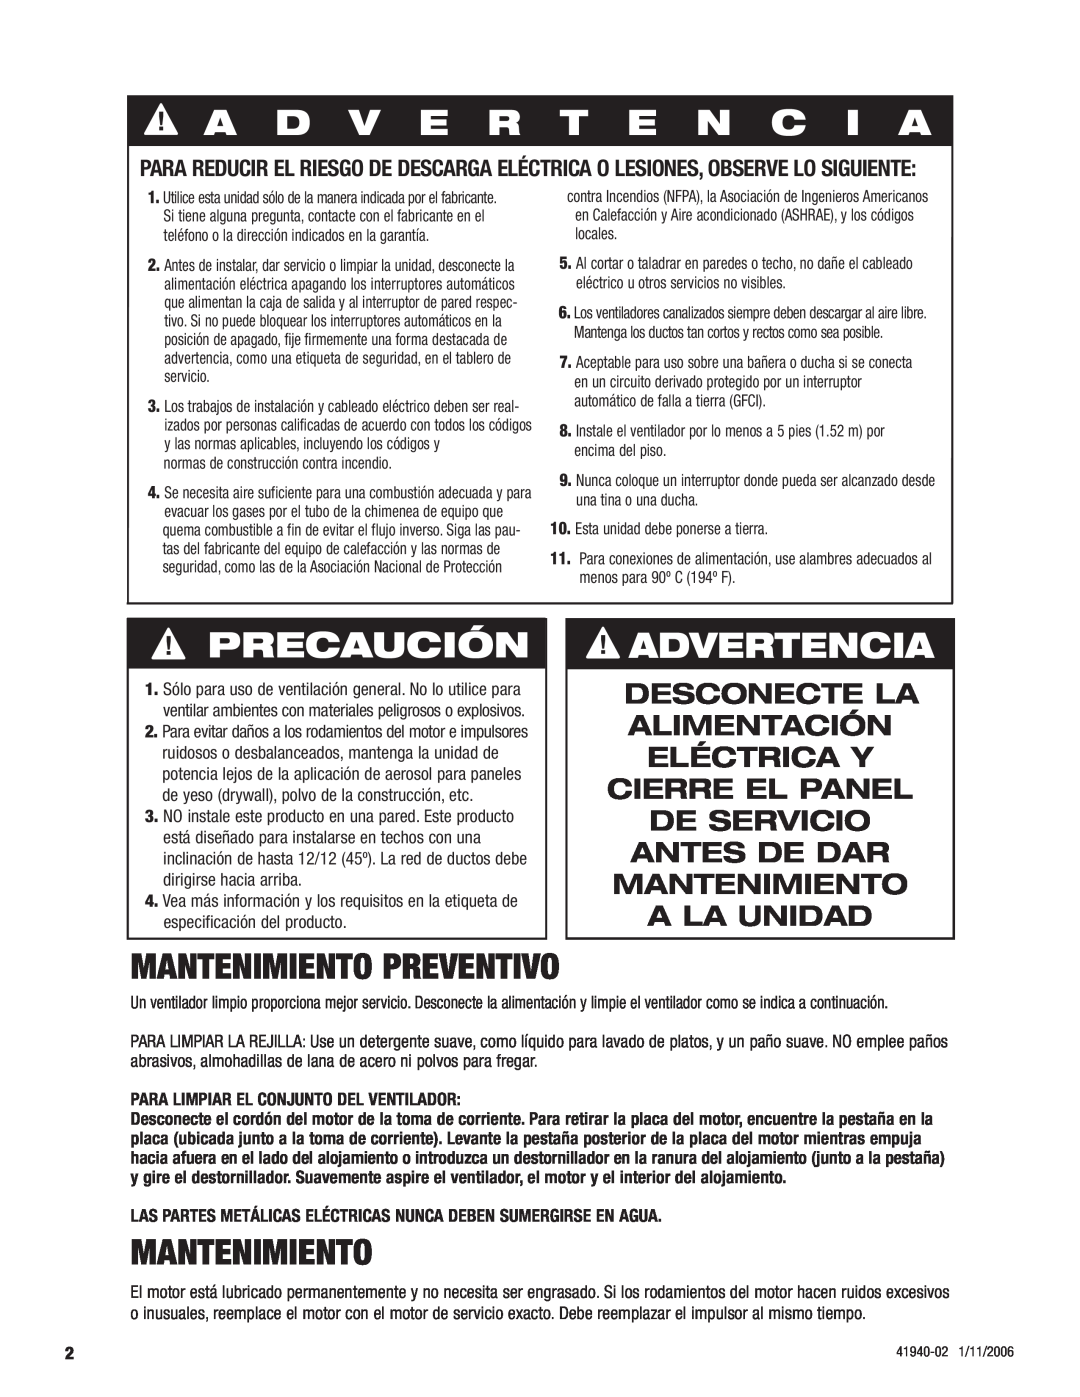 Hunter Fan 81005 manual A D V E R T E N C I A, Precaución, Advertencia, Mantenimiento preventivo 